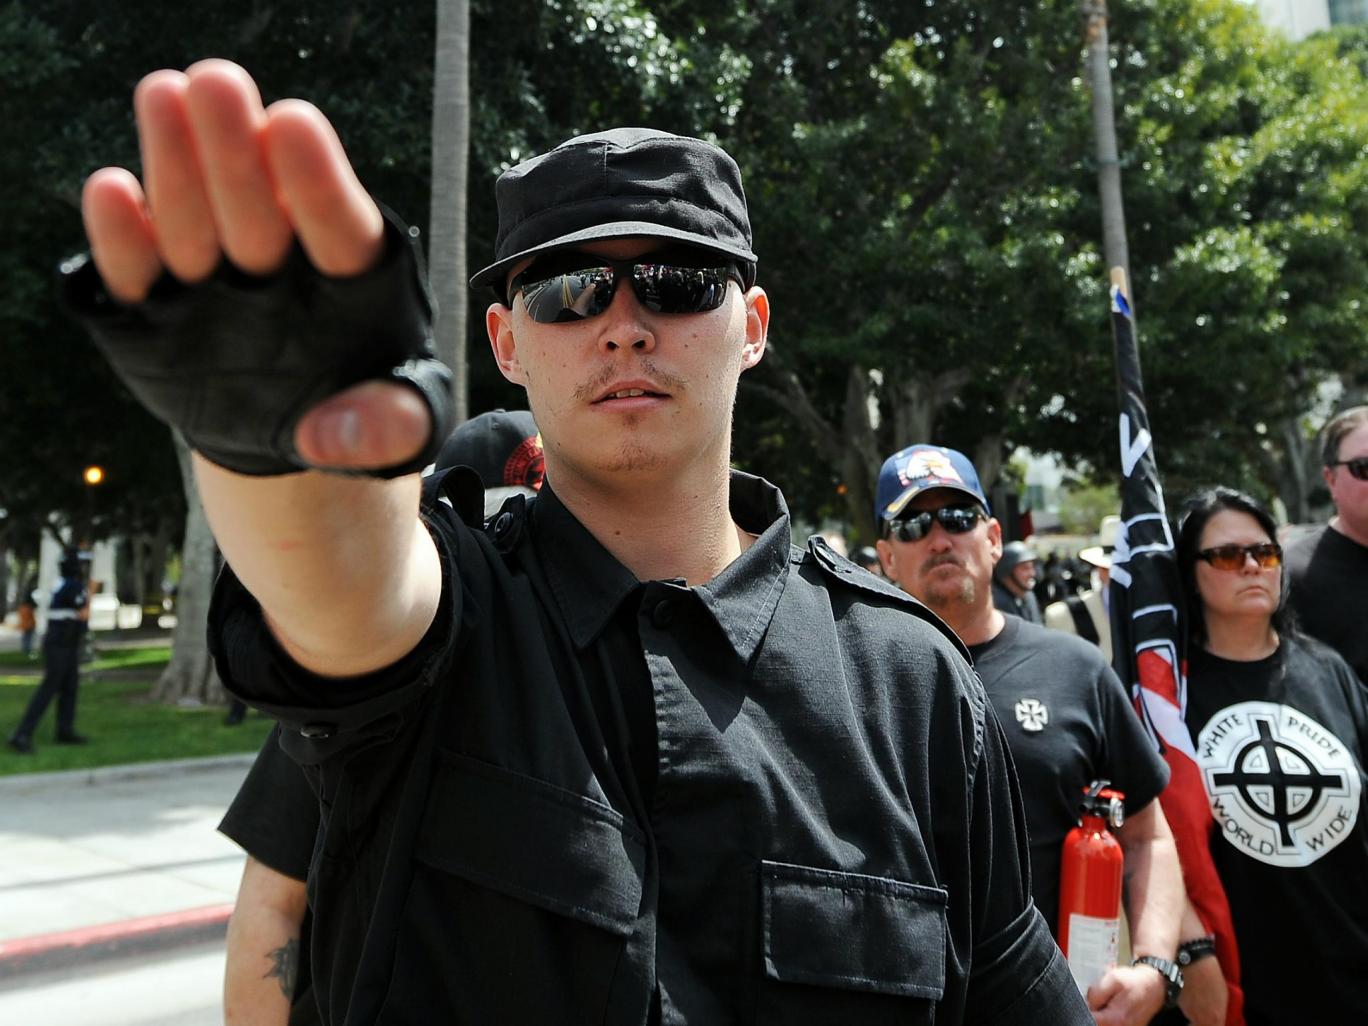 Kendilerini beyaz milliyetçisi ve Neo-nazi olarak tanımlayan twitter kullanıcıları 2012’den bu yana %600 arttı